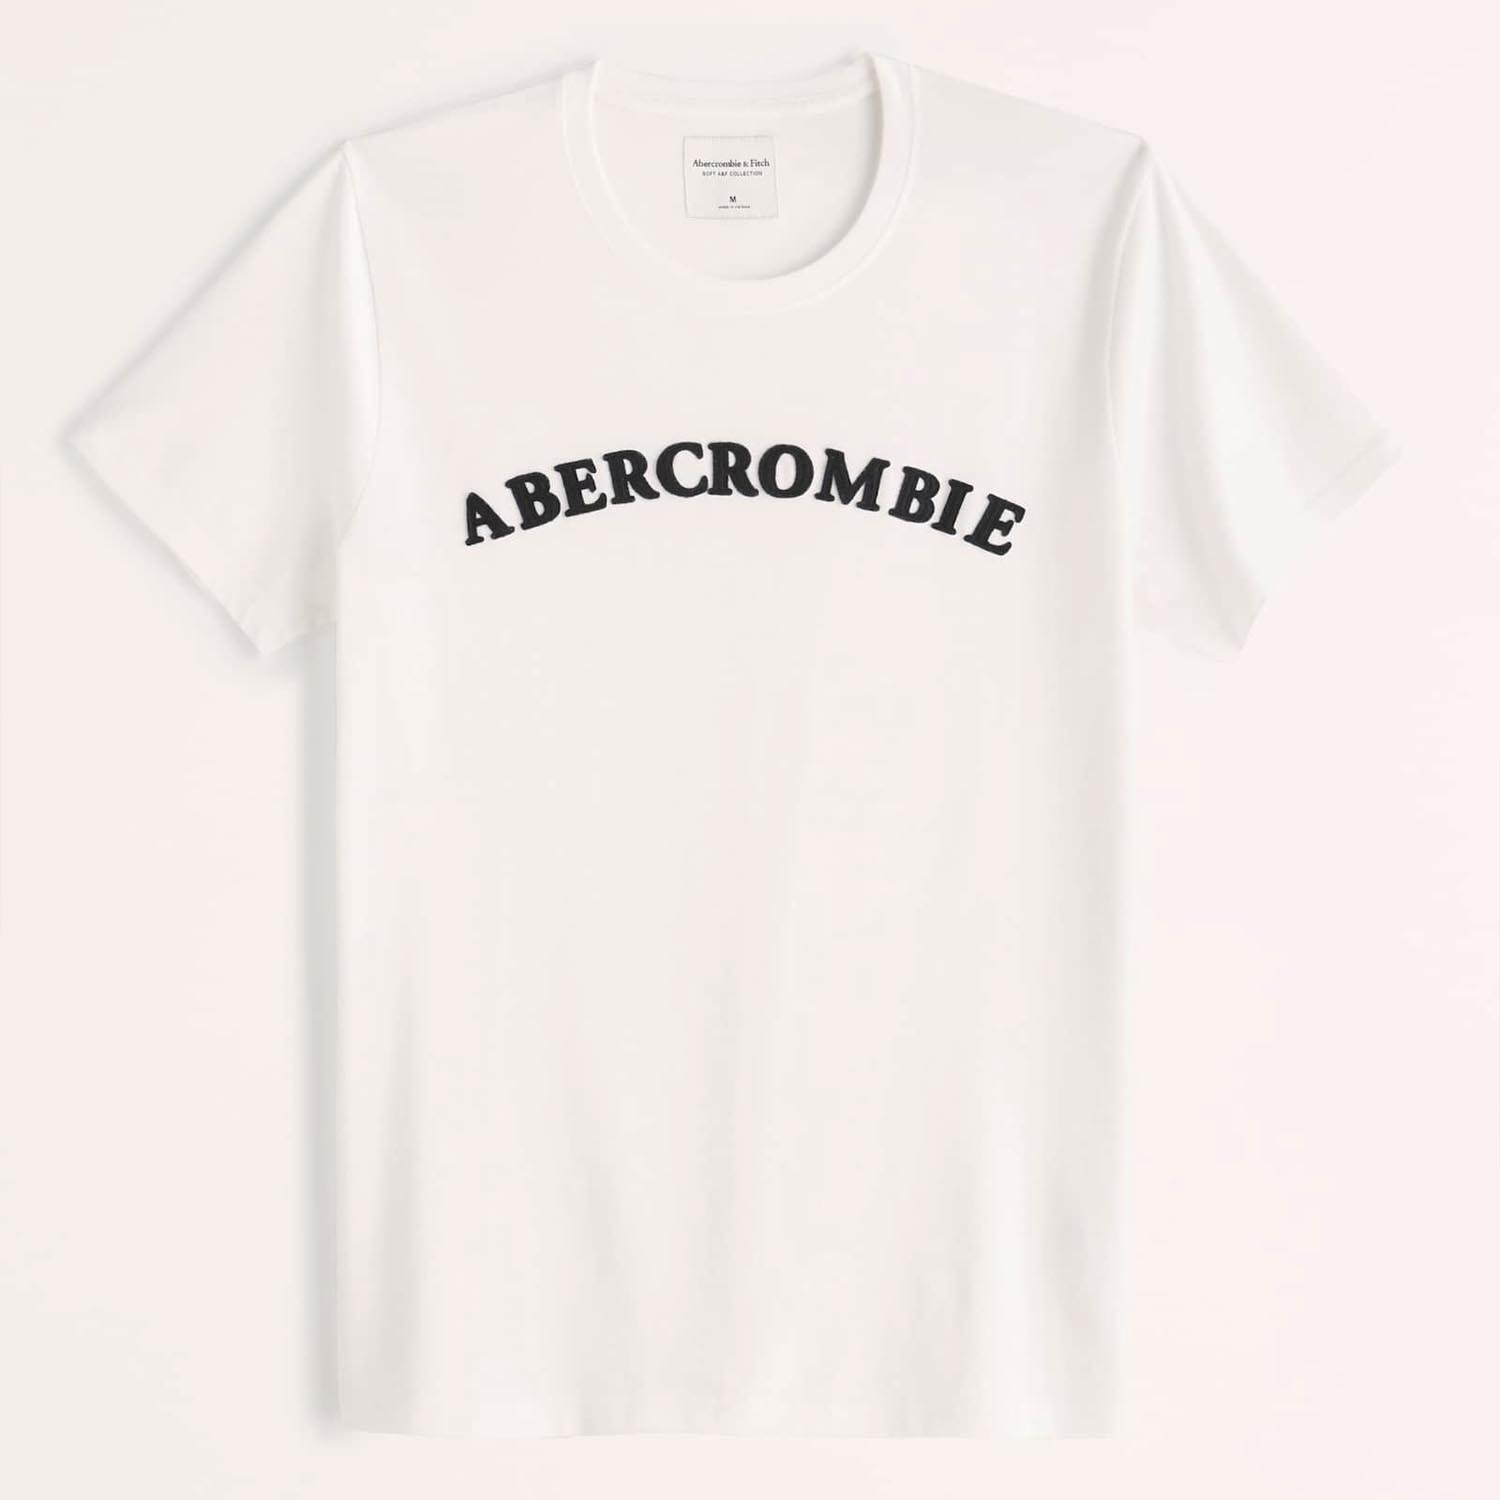 アバクロンビー&フィッチ Tシャツ メンズ 【5/17 13時~エントリーでP20倍】 Abercrombie＆Fitch 正規品 (アバクロンビー＆フィッチ) ロゴアップリケ Tシャツ (Short-Sleeve Logo Tee) メンズ (White) 新品